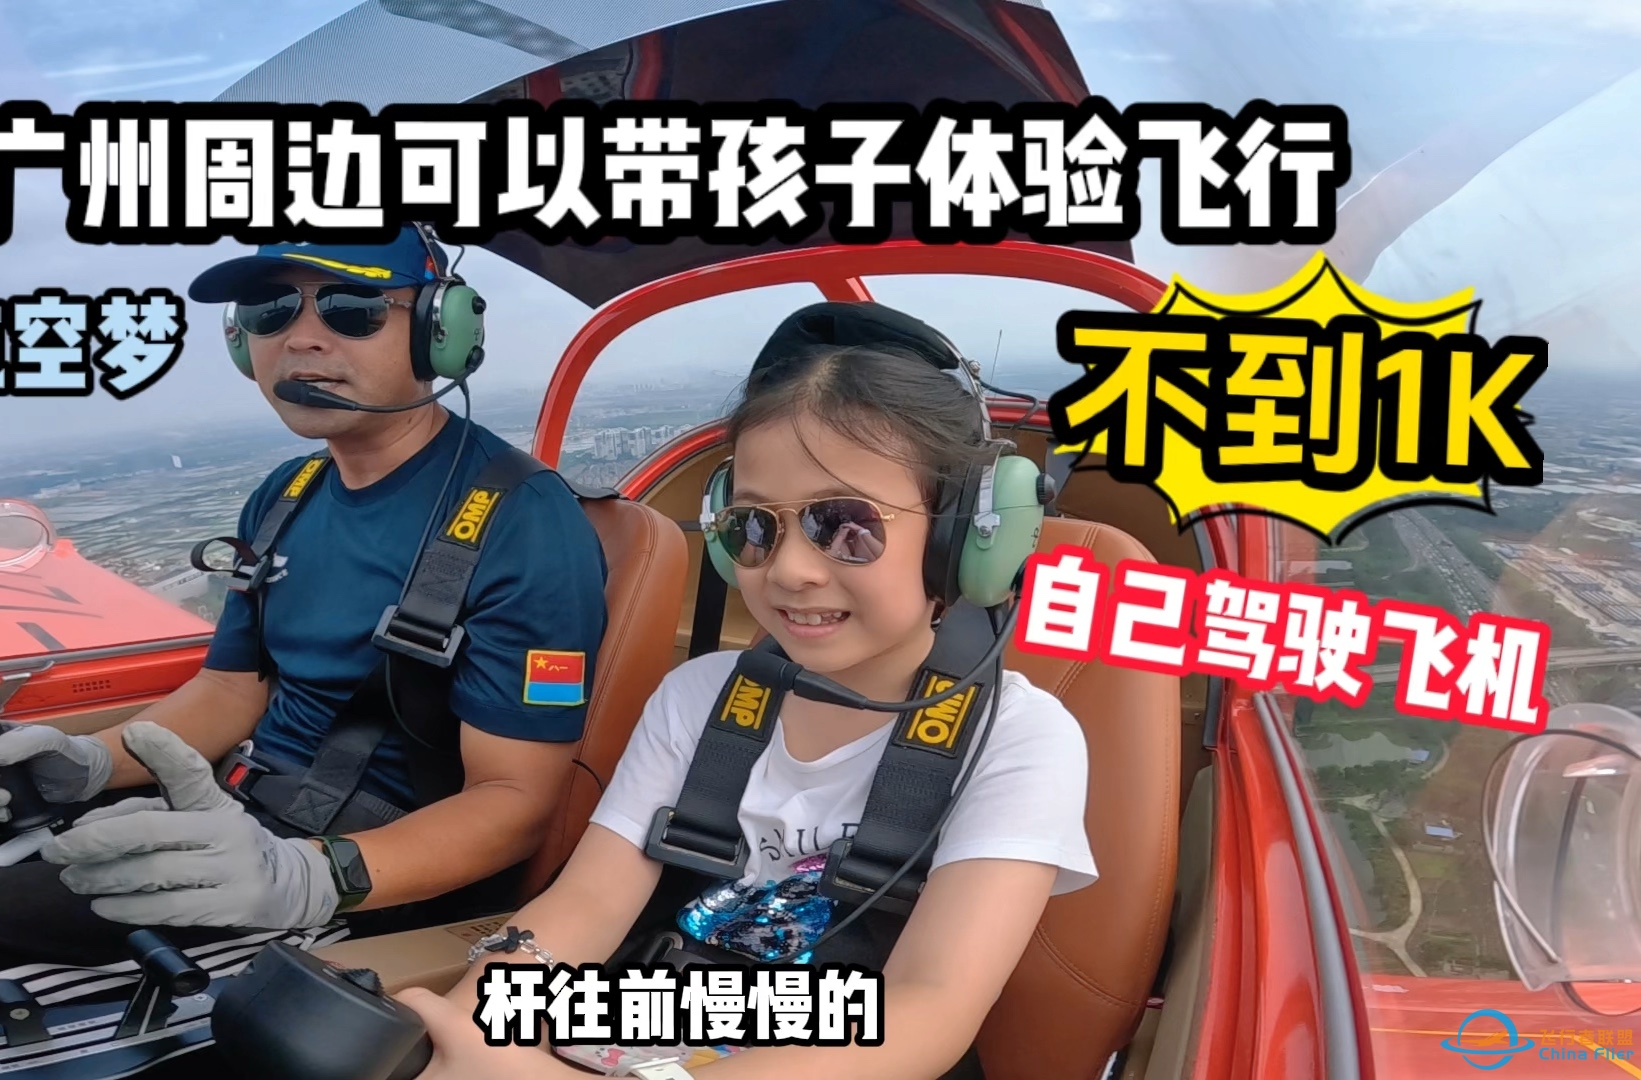 澳门10岁孩子的飞行体验第一次开飞机居然一点都不怕在广州深圳周边可以体验自己驾驶真飞机啦～比跳伞还刺激的运动 你敢来挑战吗？-1614 